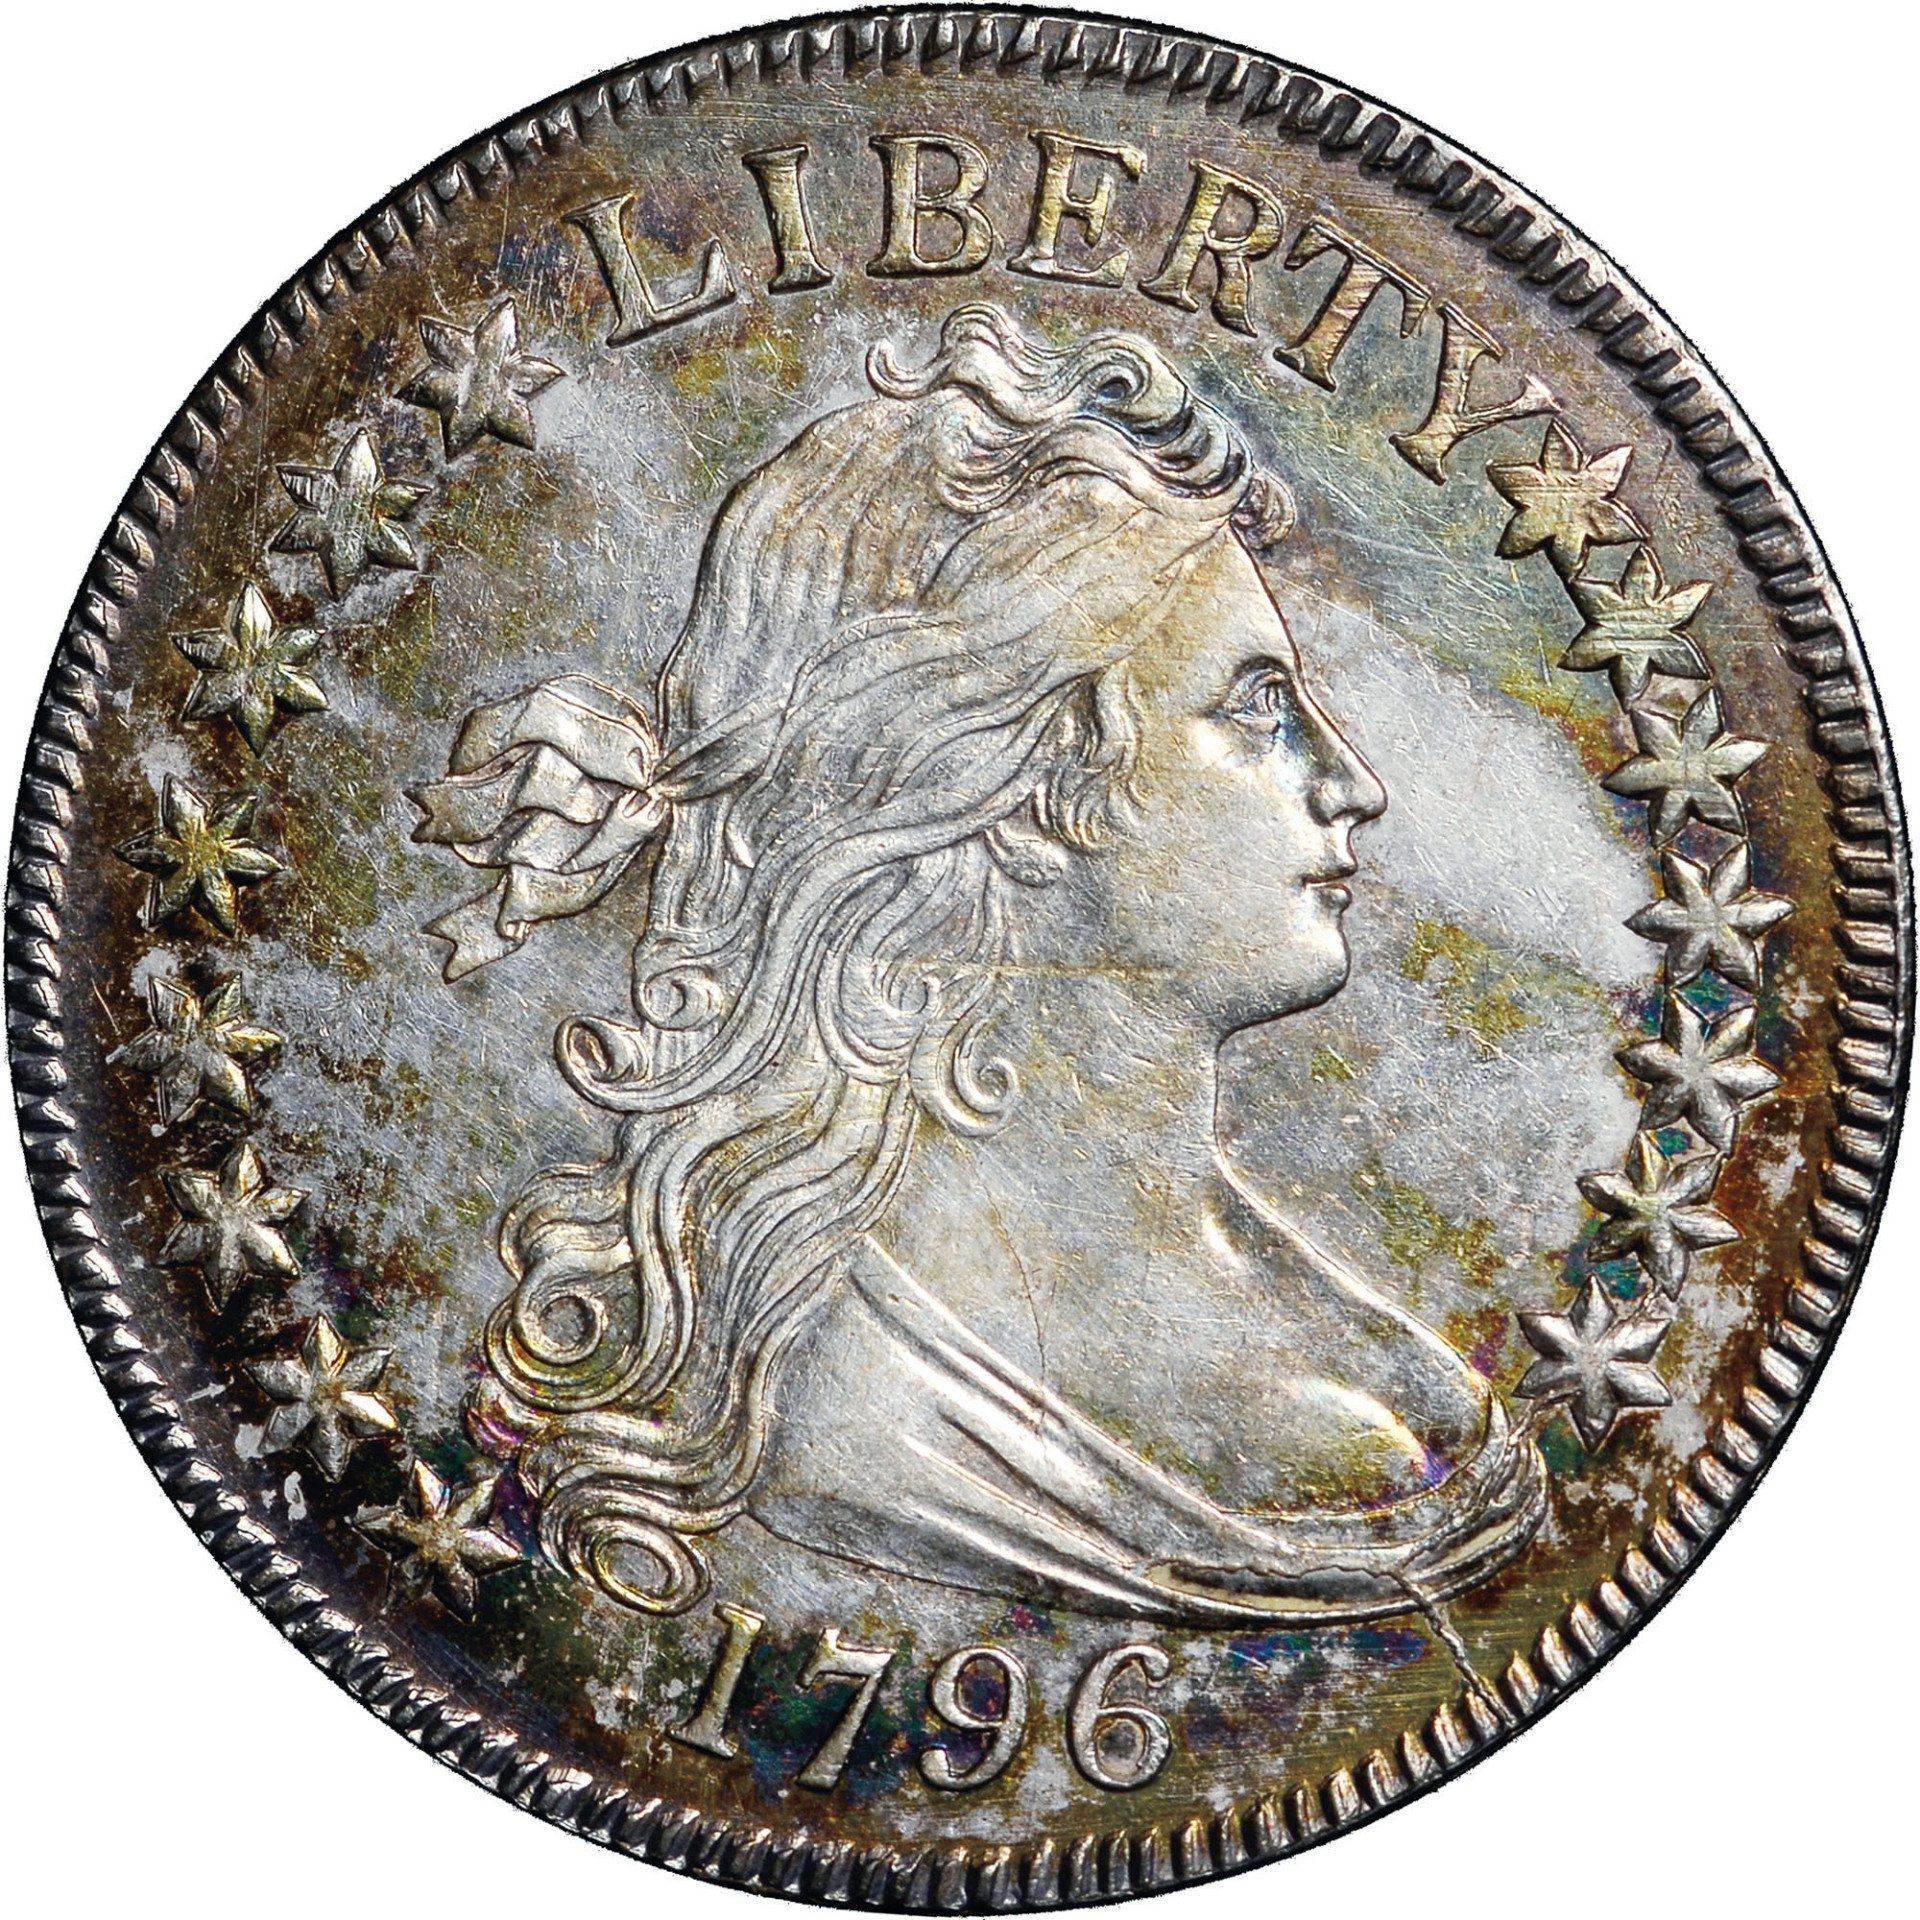 1796 Draped Bust Half Dollar - Image courtesy of NGC